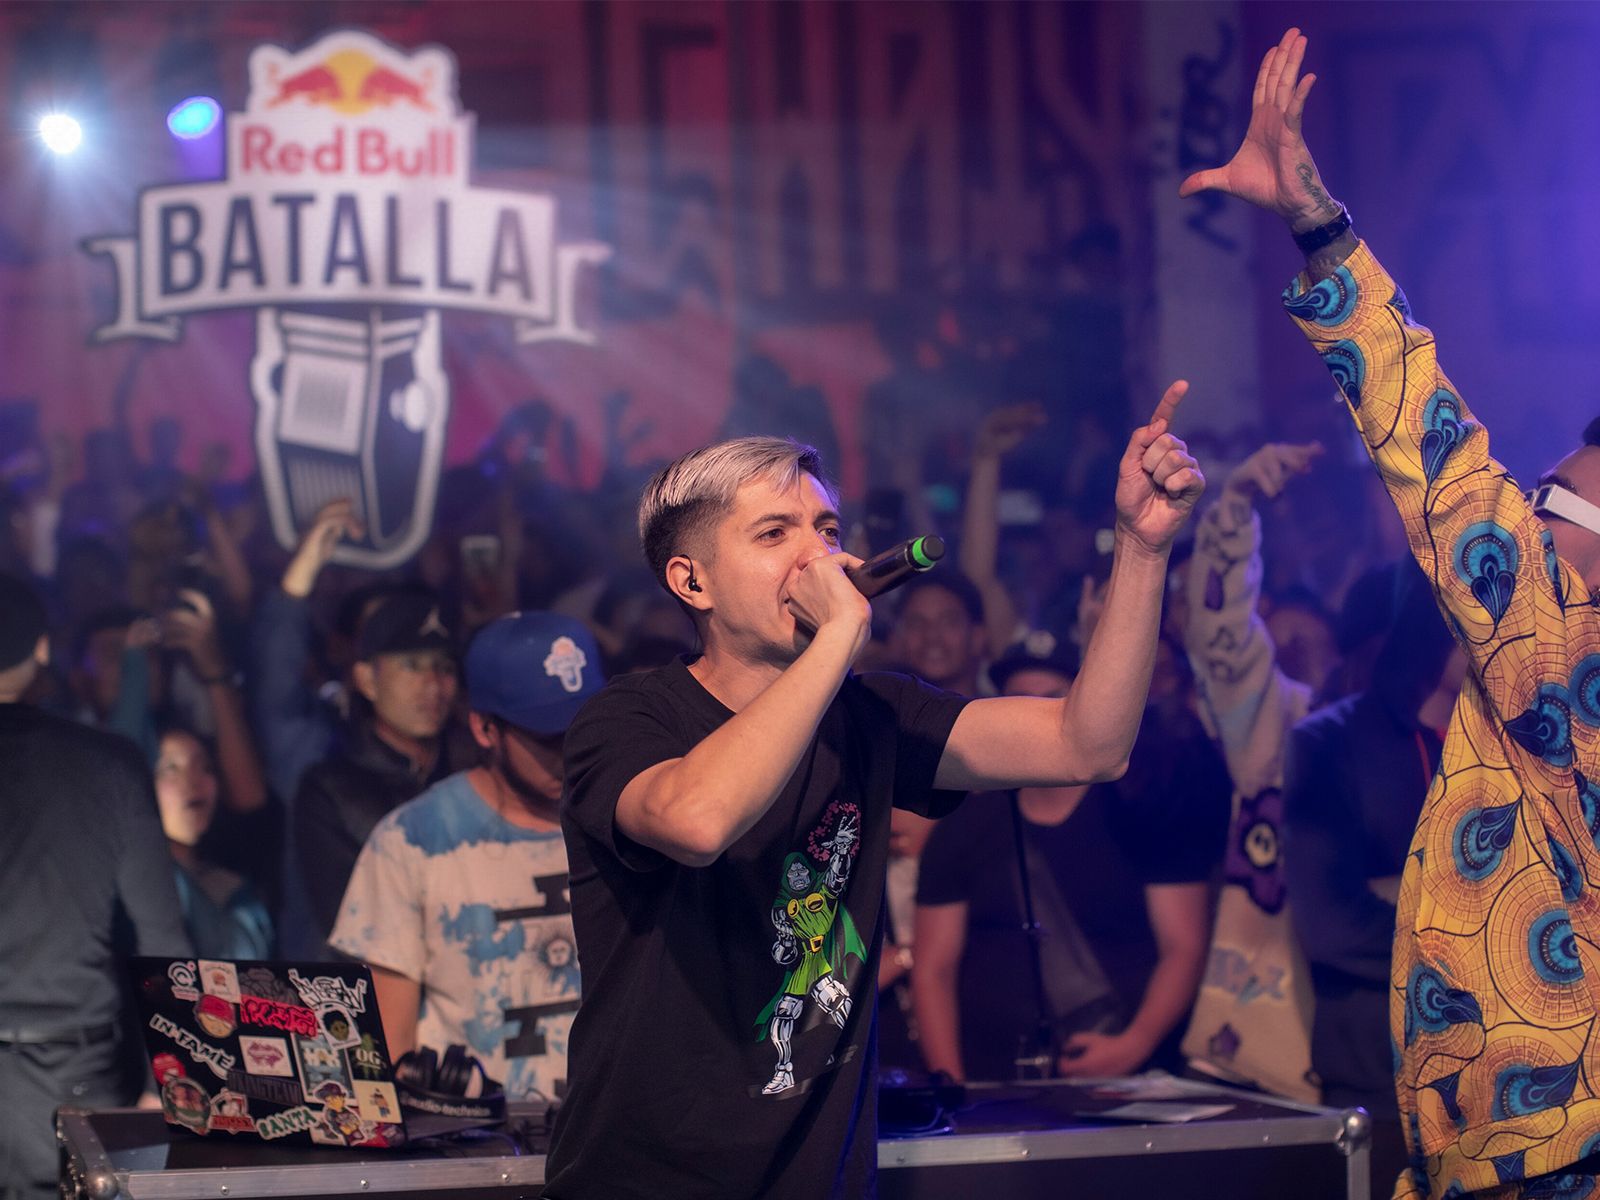 Red Bull Batalla: Tres españoles se juegan en México el título de Campeón Internacional